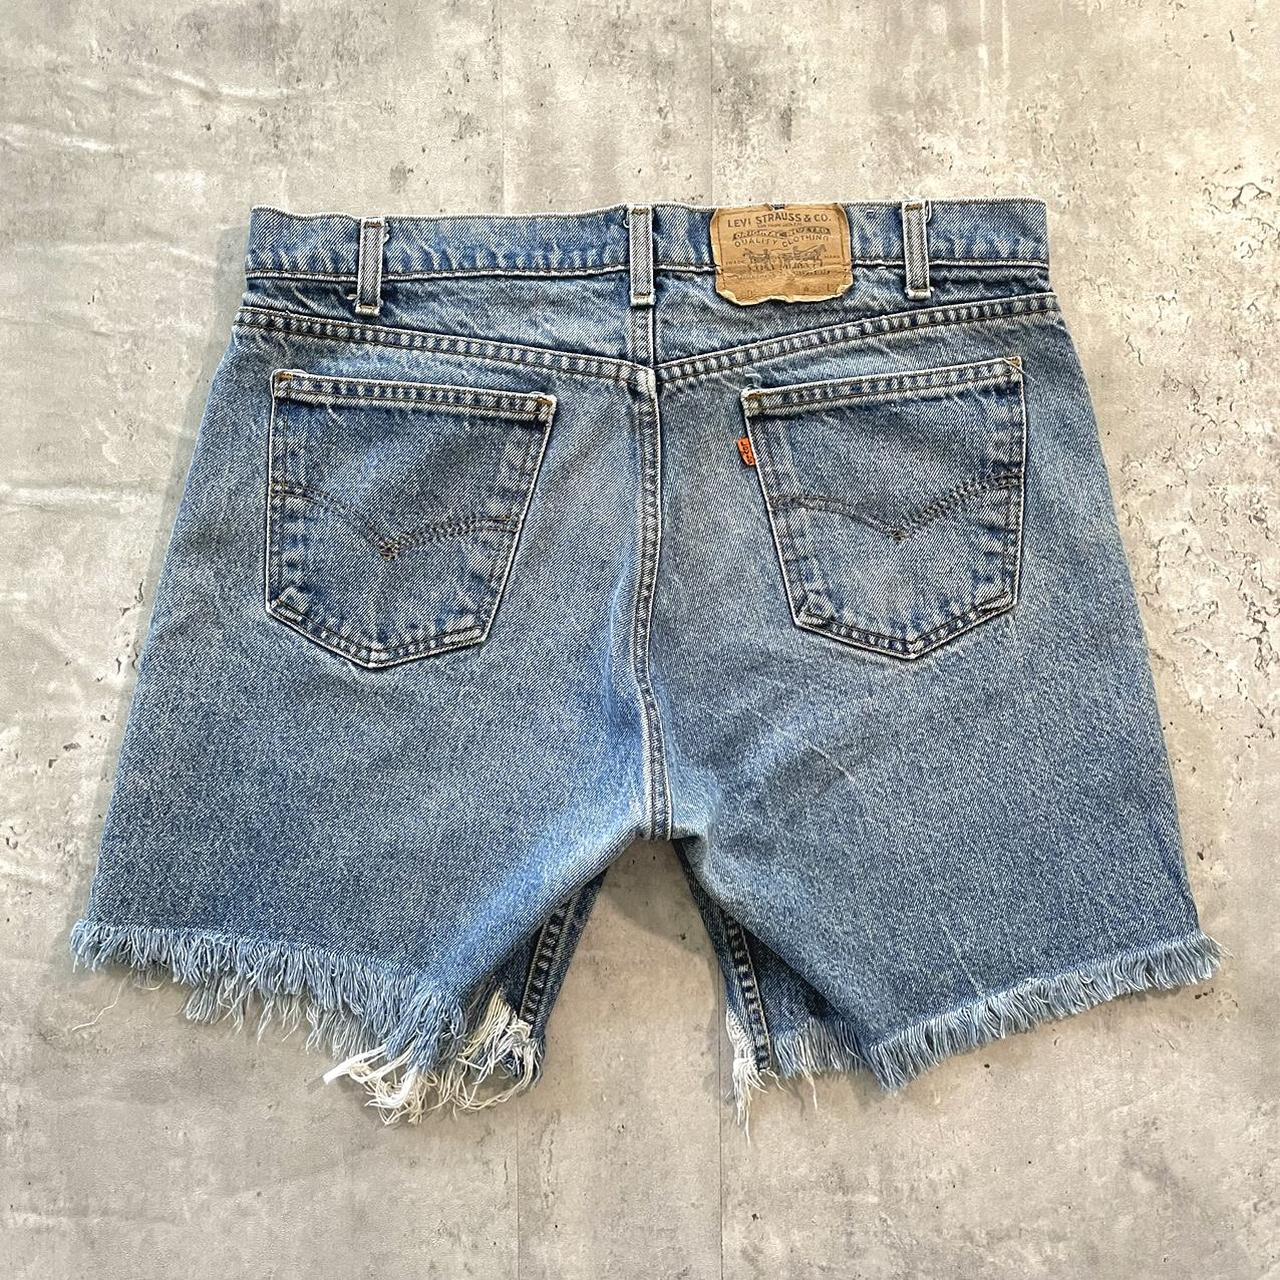 Men's Vintage Cut-Off Shorts MS03 (Size 29)